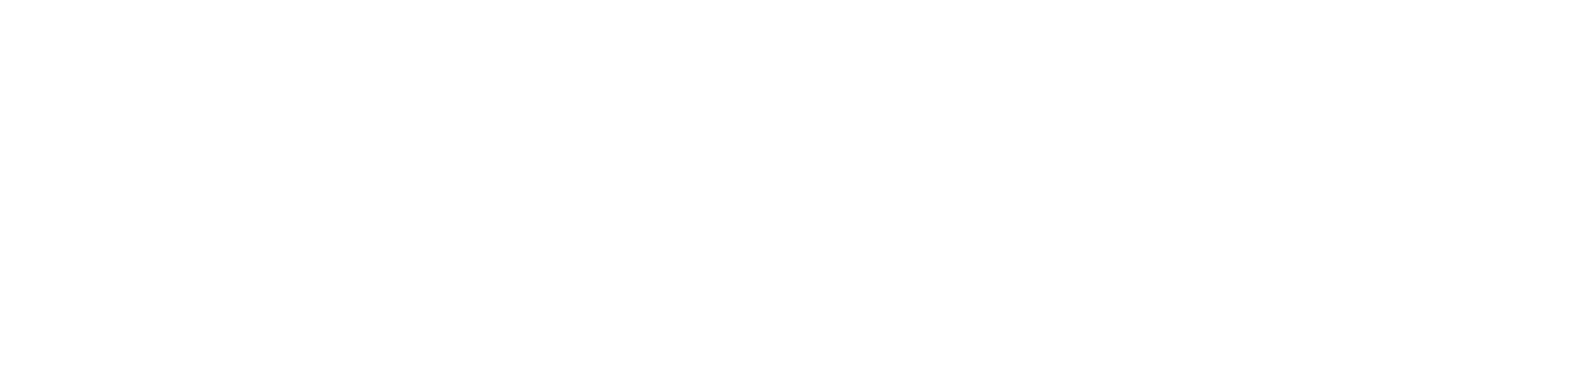 SKF (Svenska Kullagerfabriken) logo pour fonds sombres (PNG transparent)